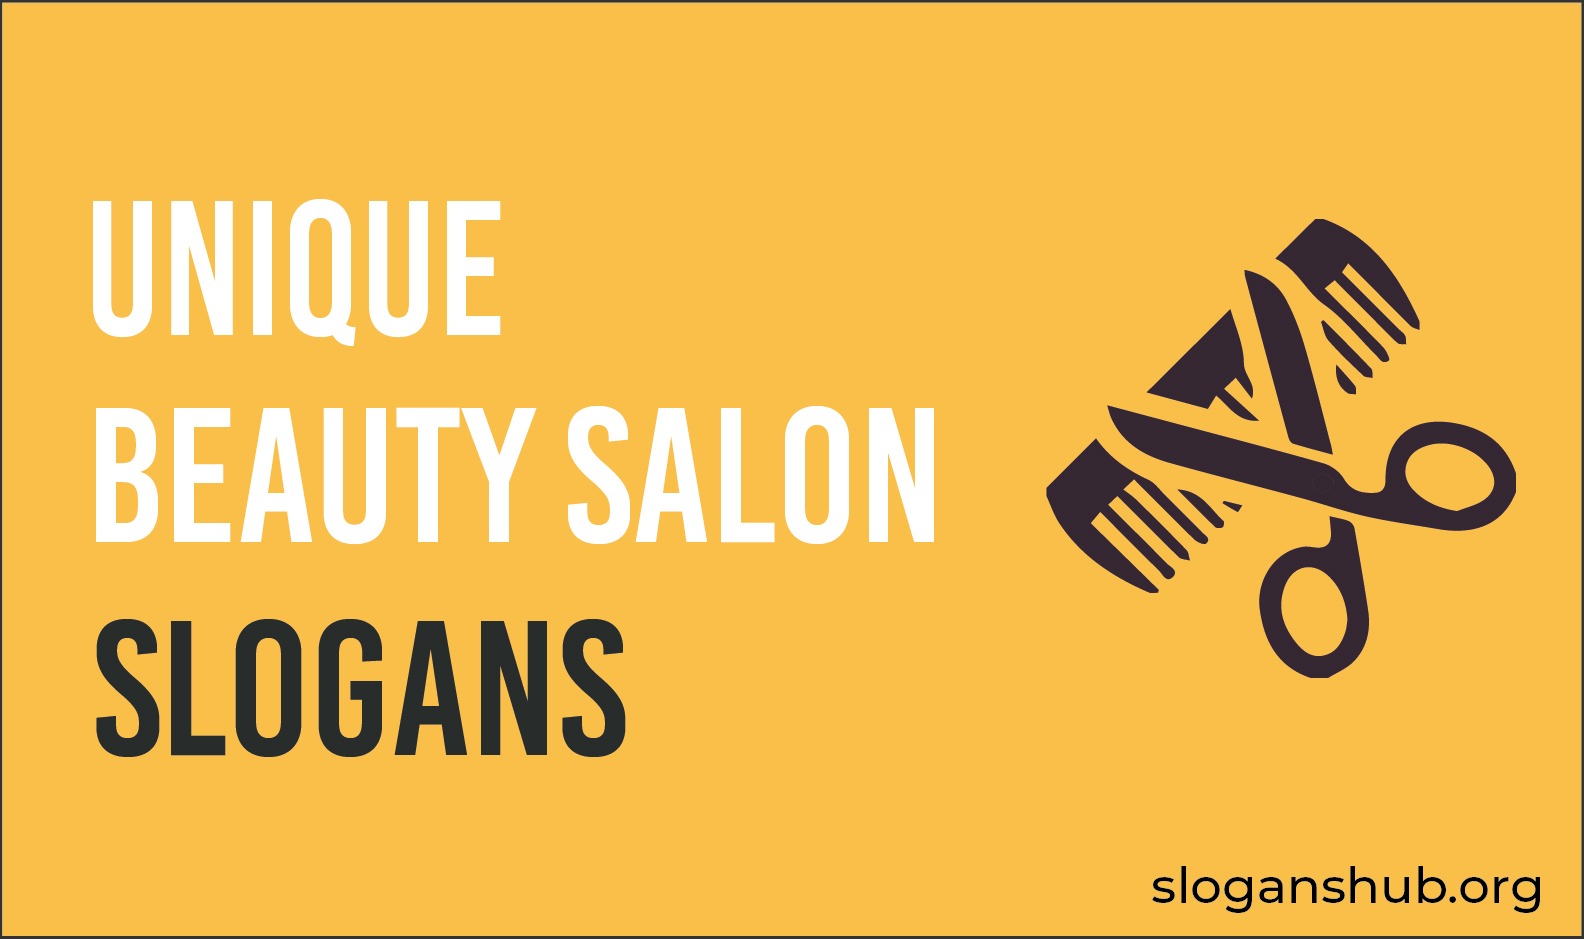 100 Unique Beauty Salon Slogans and Taglines